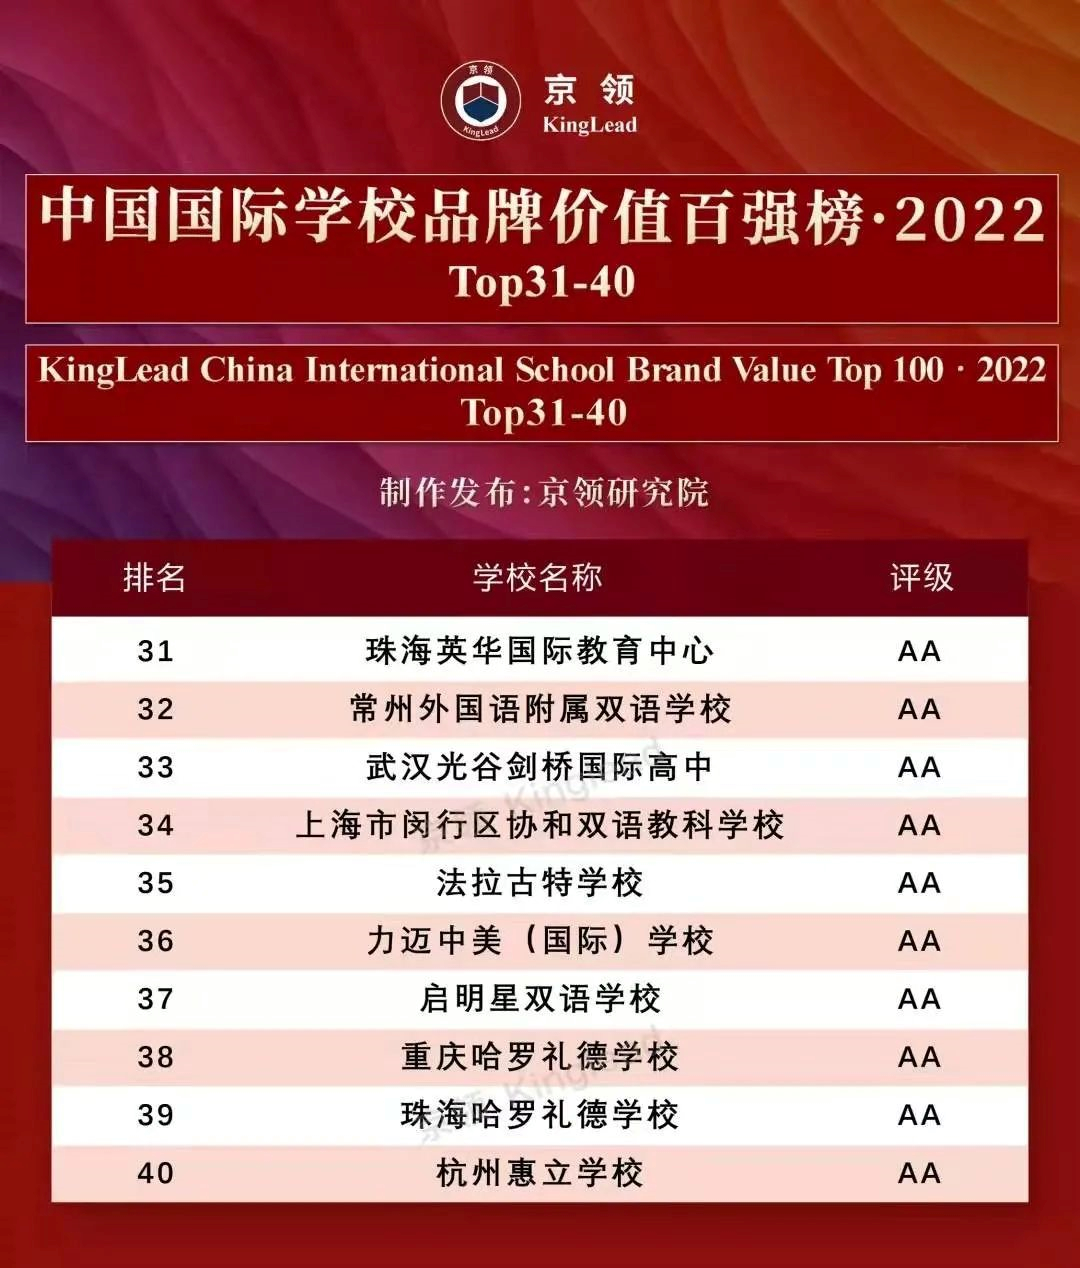 2年跨越式发展，英华荣登“国际学校百强榜”Top31